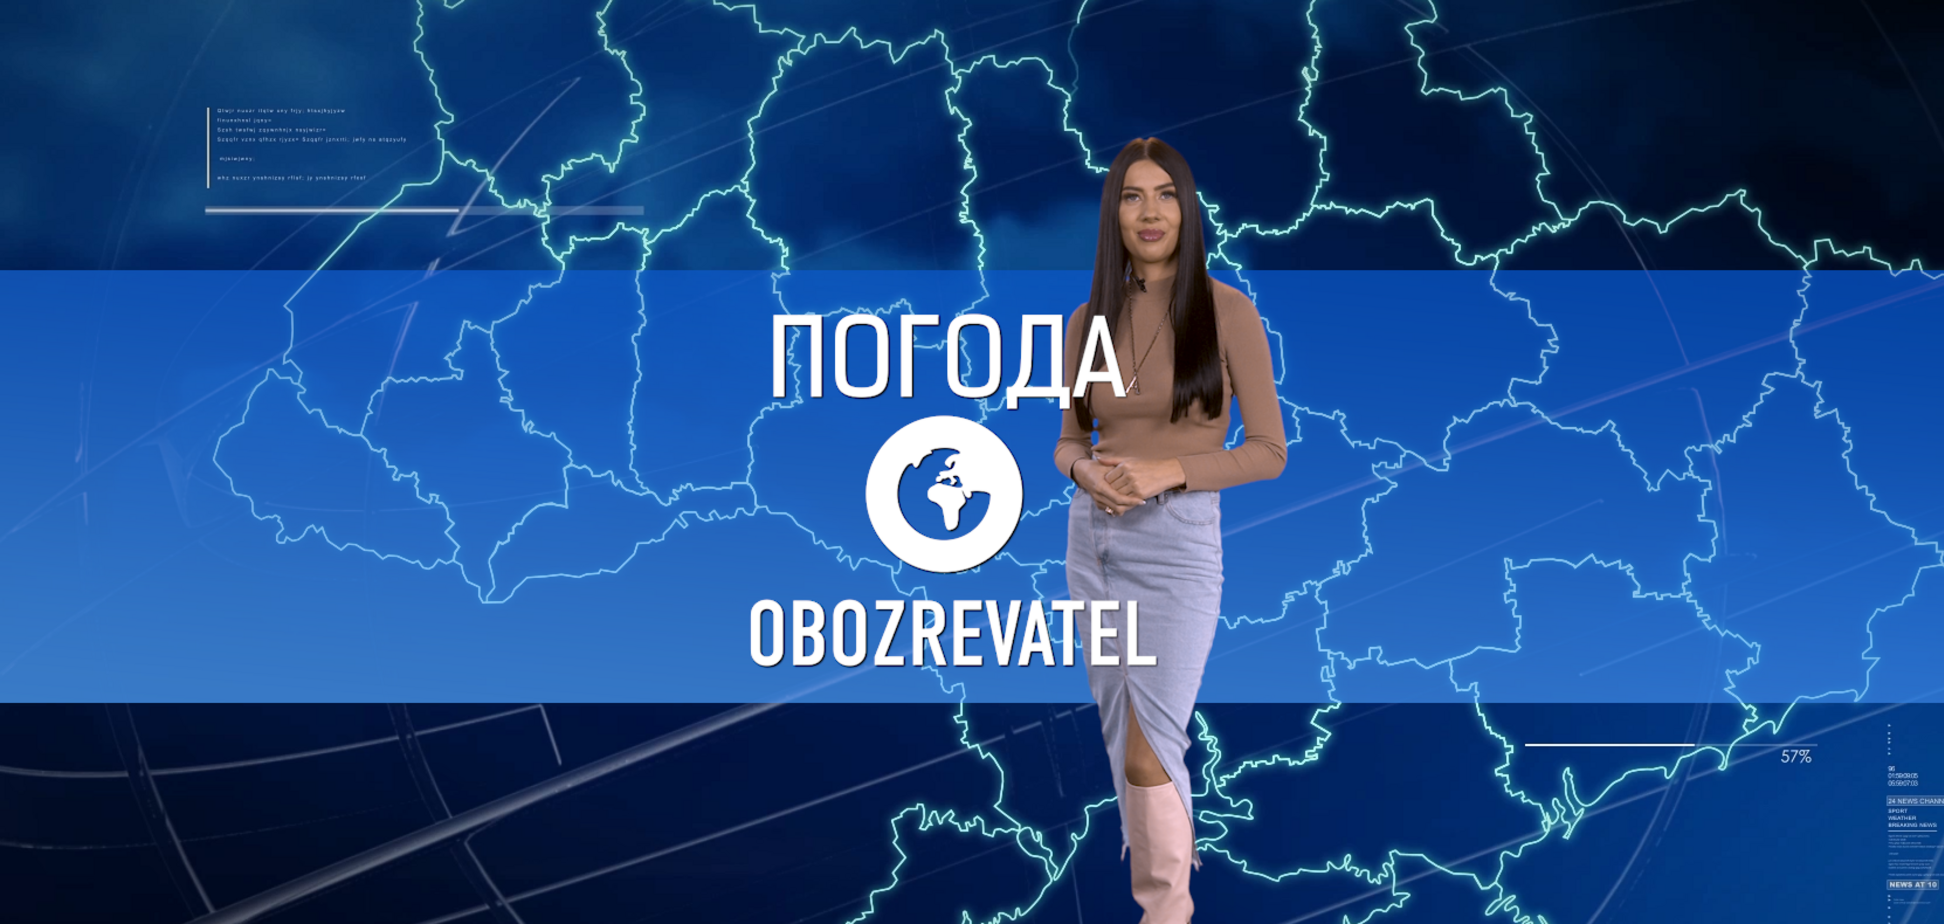 Прогноз погоды в Украине на среду, 22 декабря, с Алисой Мярковской